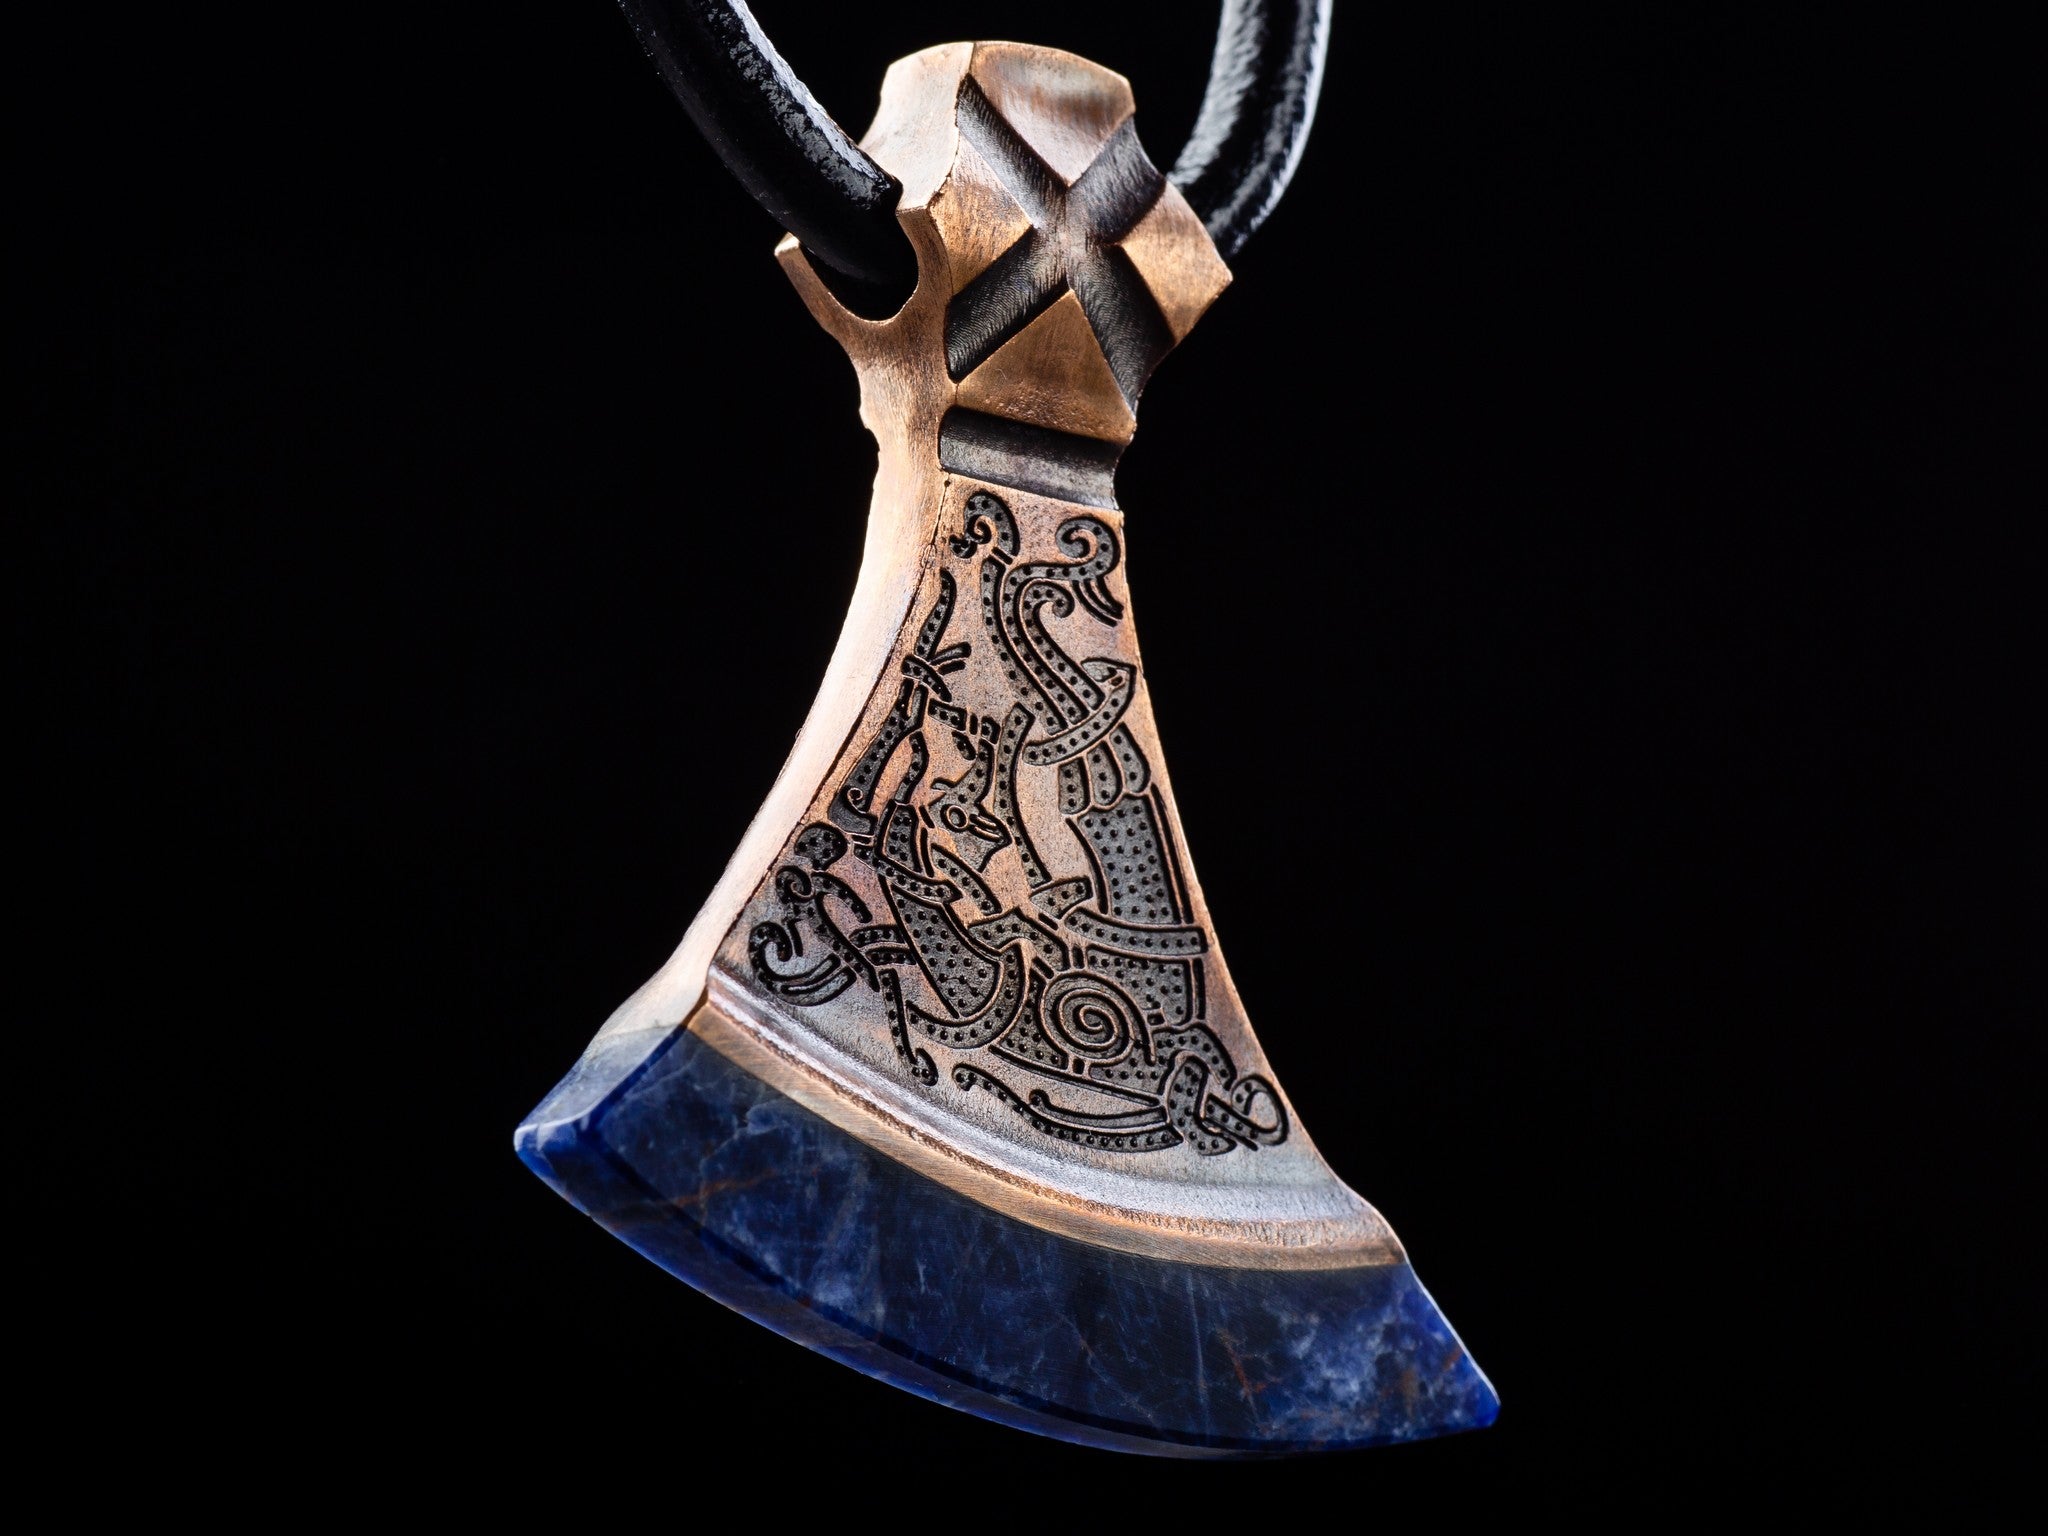 Mammen style bird ornament of a bronze axe